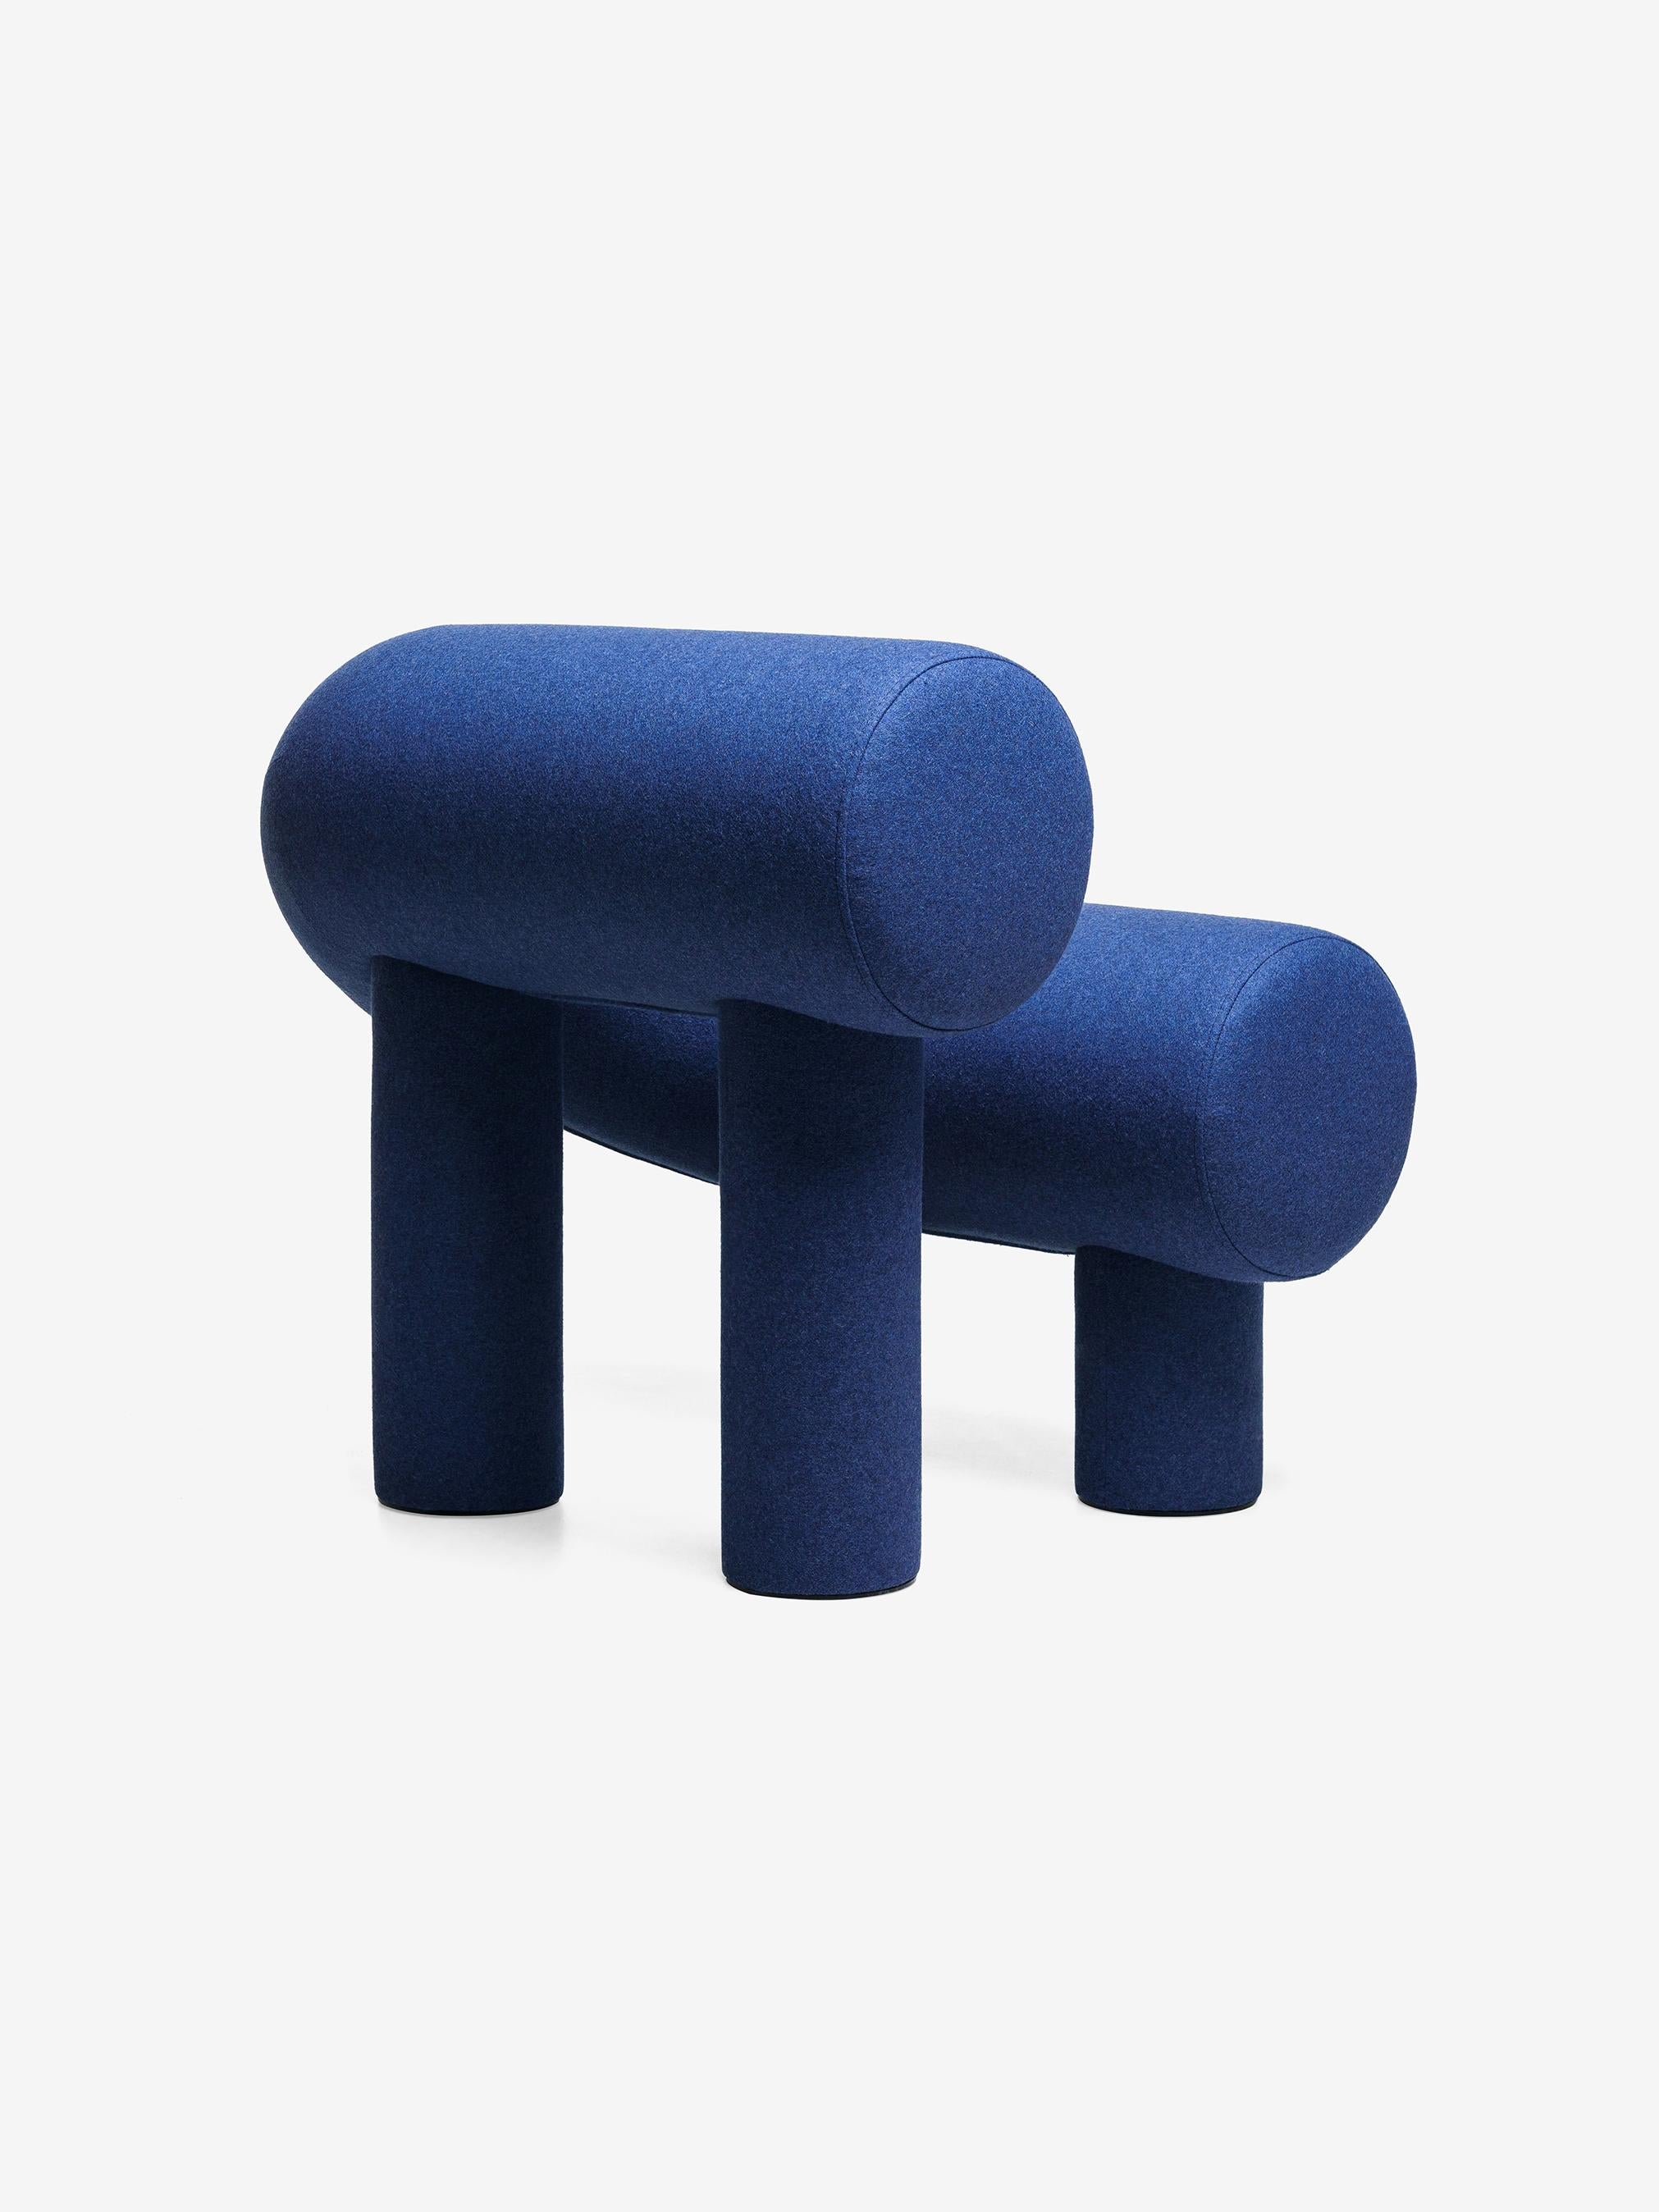 Der Designer Rostislav Sorokoviy wollte ein Objekt schaffen, das eher einer weichen Skulptur als einem Möbelstück ähnelt. 
Die Sitzfläche und die Rückenlehne des Sessels bestehen aus zwei hufeisenförmig verbundenen Zylindern. Die Beine sind